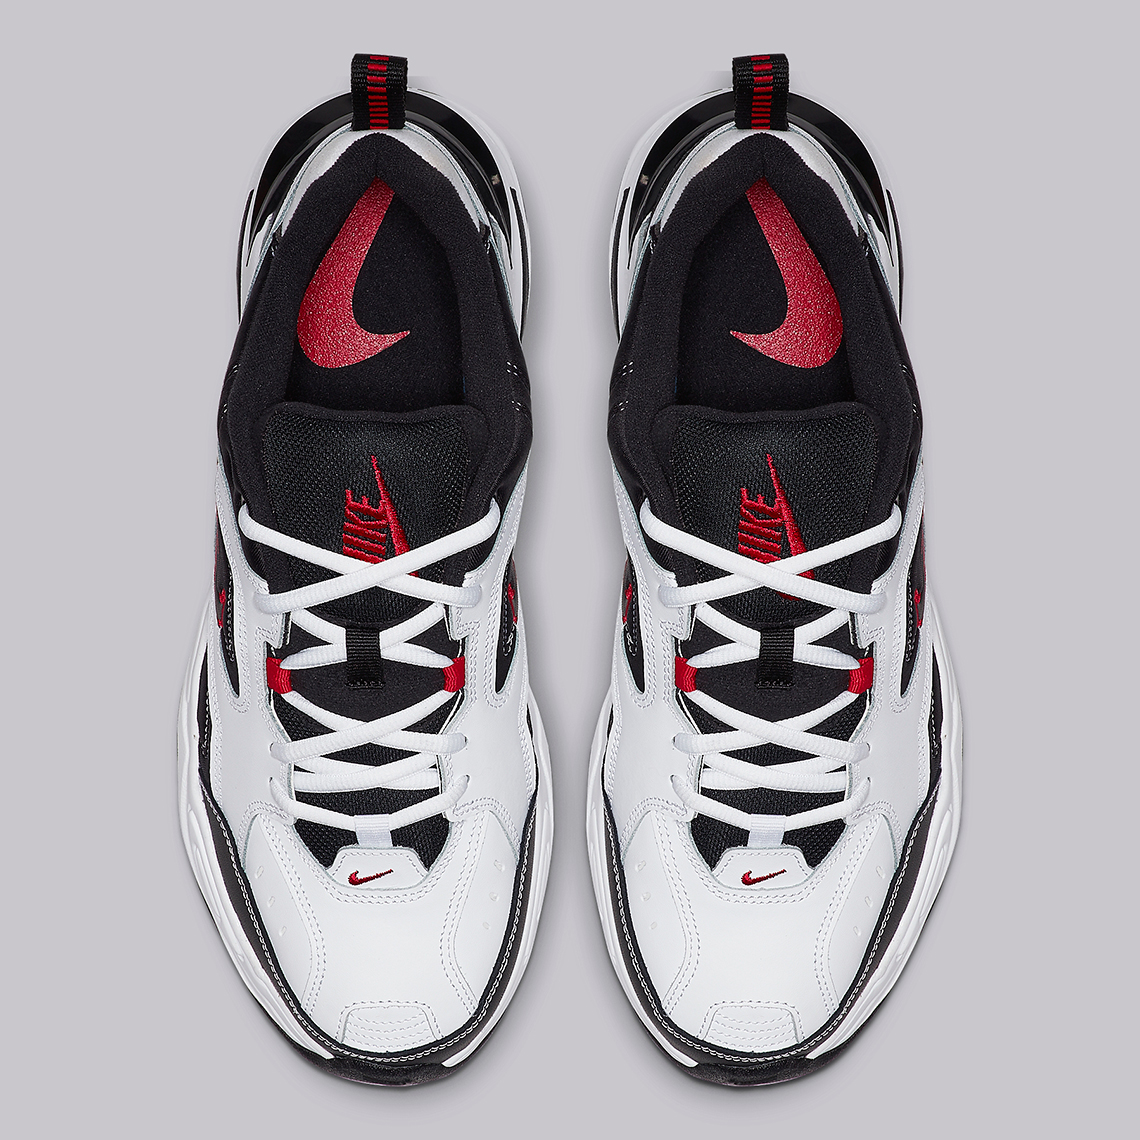 Monarch White Red Black AV4789-104 Release Info | SneakerNews.com